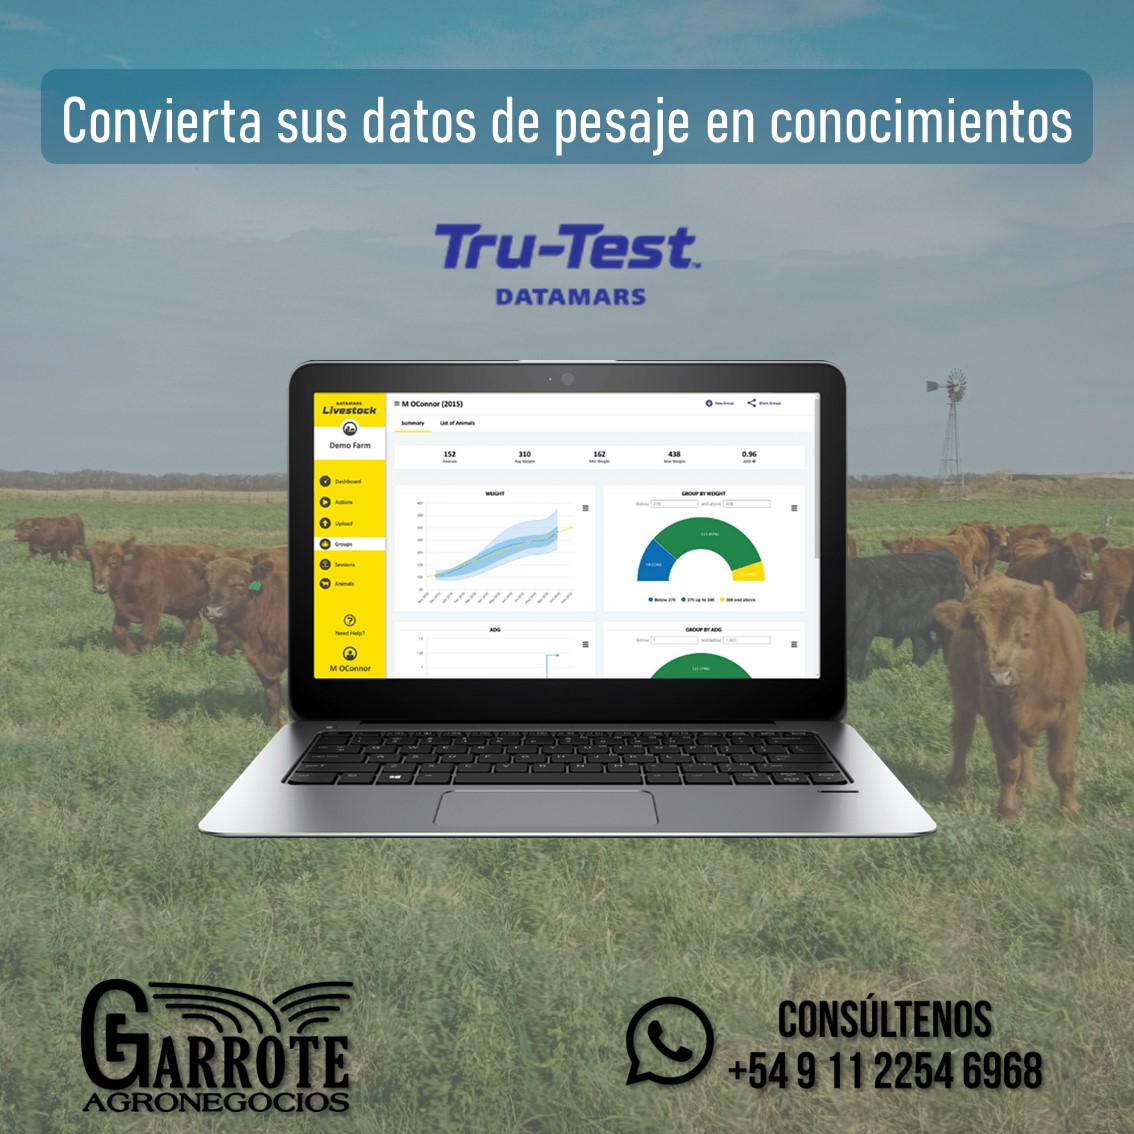 📊 🐮 Potencia el manejo de tu ganadería con el software de Datamars Livestock. Identifica a tus animales y realiza un seguimiento detallado de su desempeño individual. Convertí los datos de pesaje en información clara y útil para tomar decisiones estratégicas.